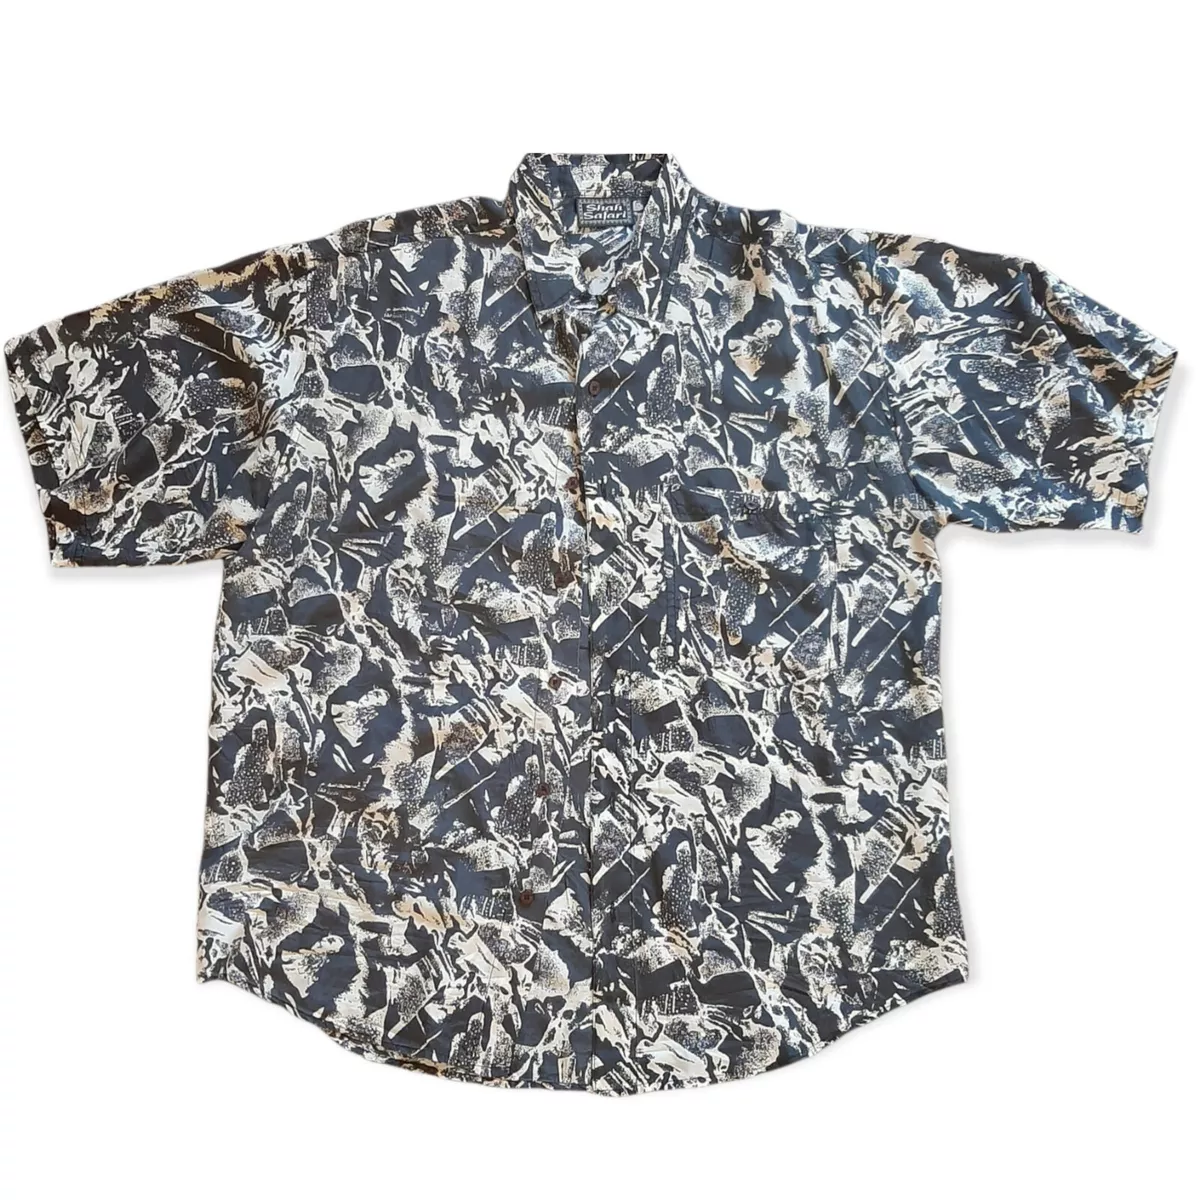 Shah Safari Mens Large 100% Silk Abstract Art Lightweight Short Sleeve Shirt